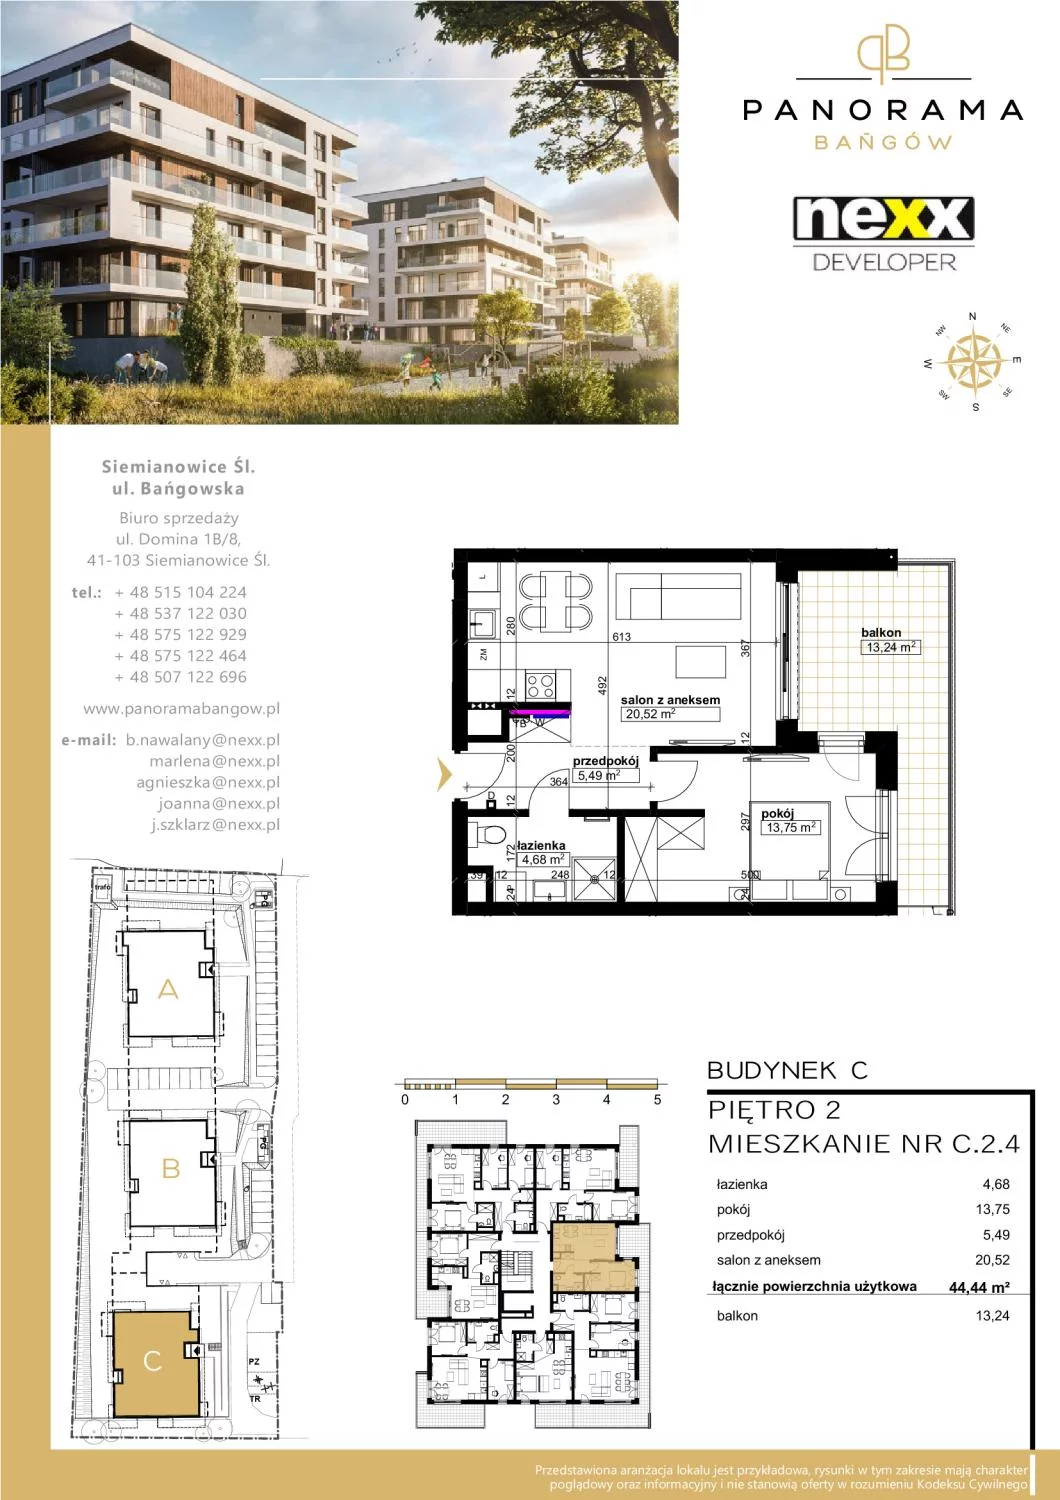 Mieszkanie 44,44 m², piętro 2, oferta nr C 2.4, Panorama Bańgów, Siemianowice Śląskie, Bańgów, ul. Bańgowska